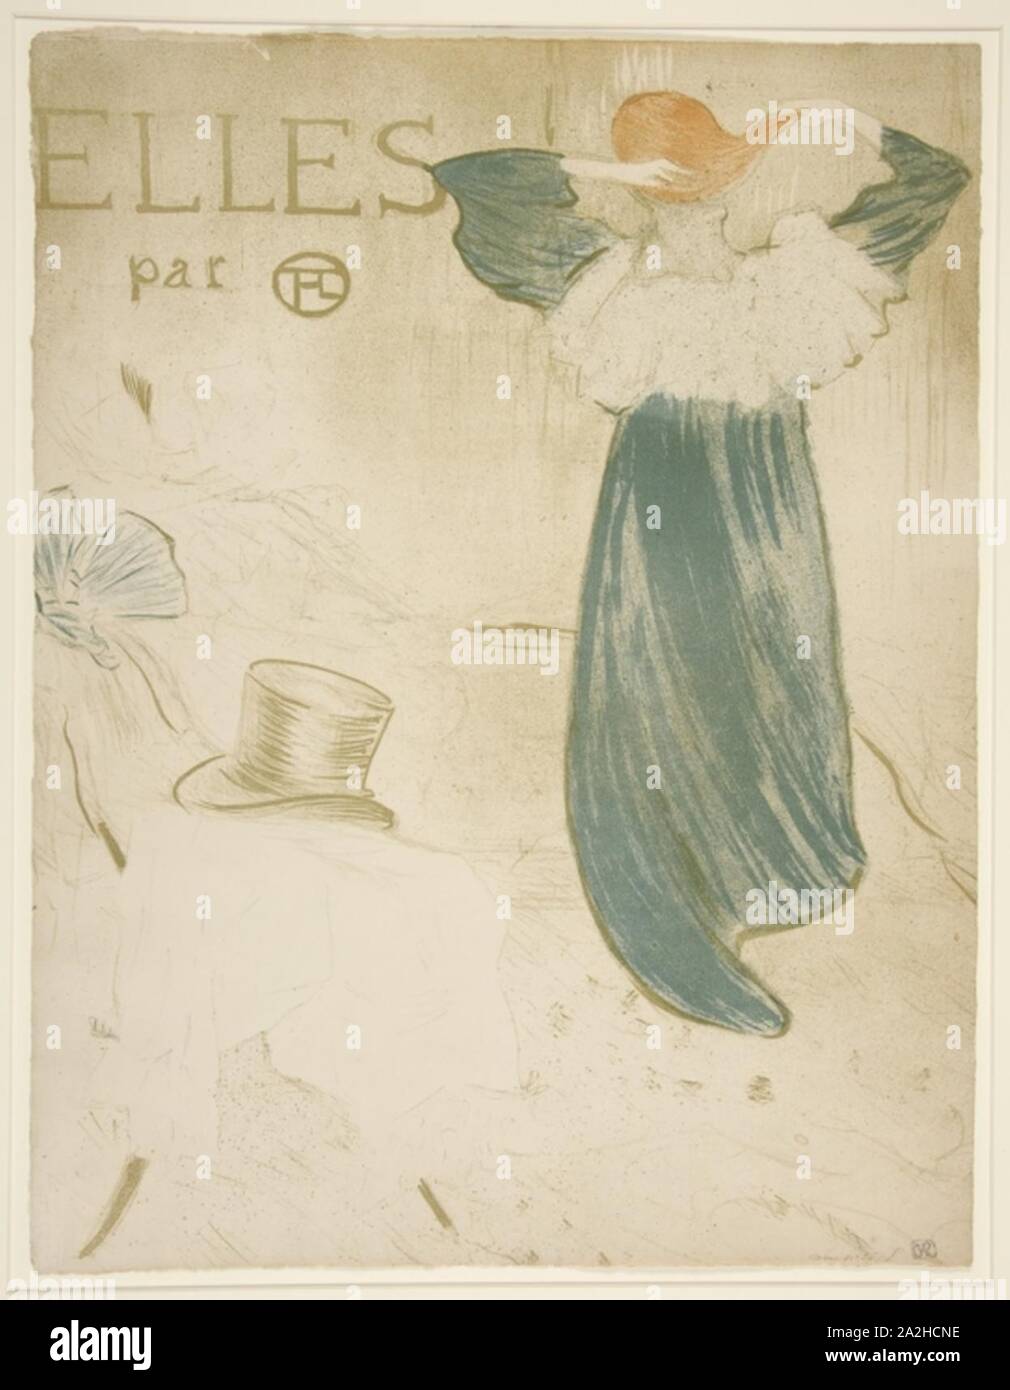 Elles par T-L frontispiz von Henri de Toulouse-Lautrec 1896. Stockfoto